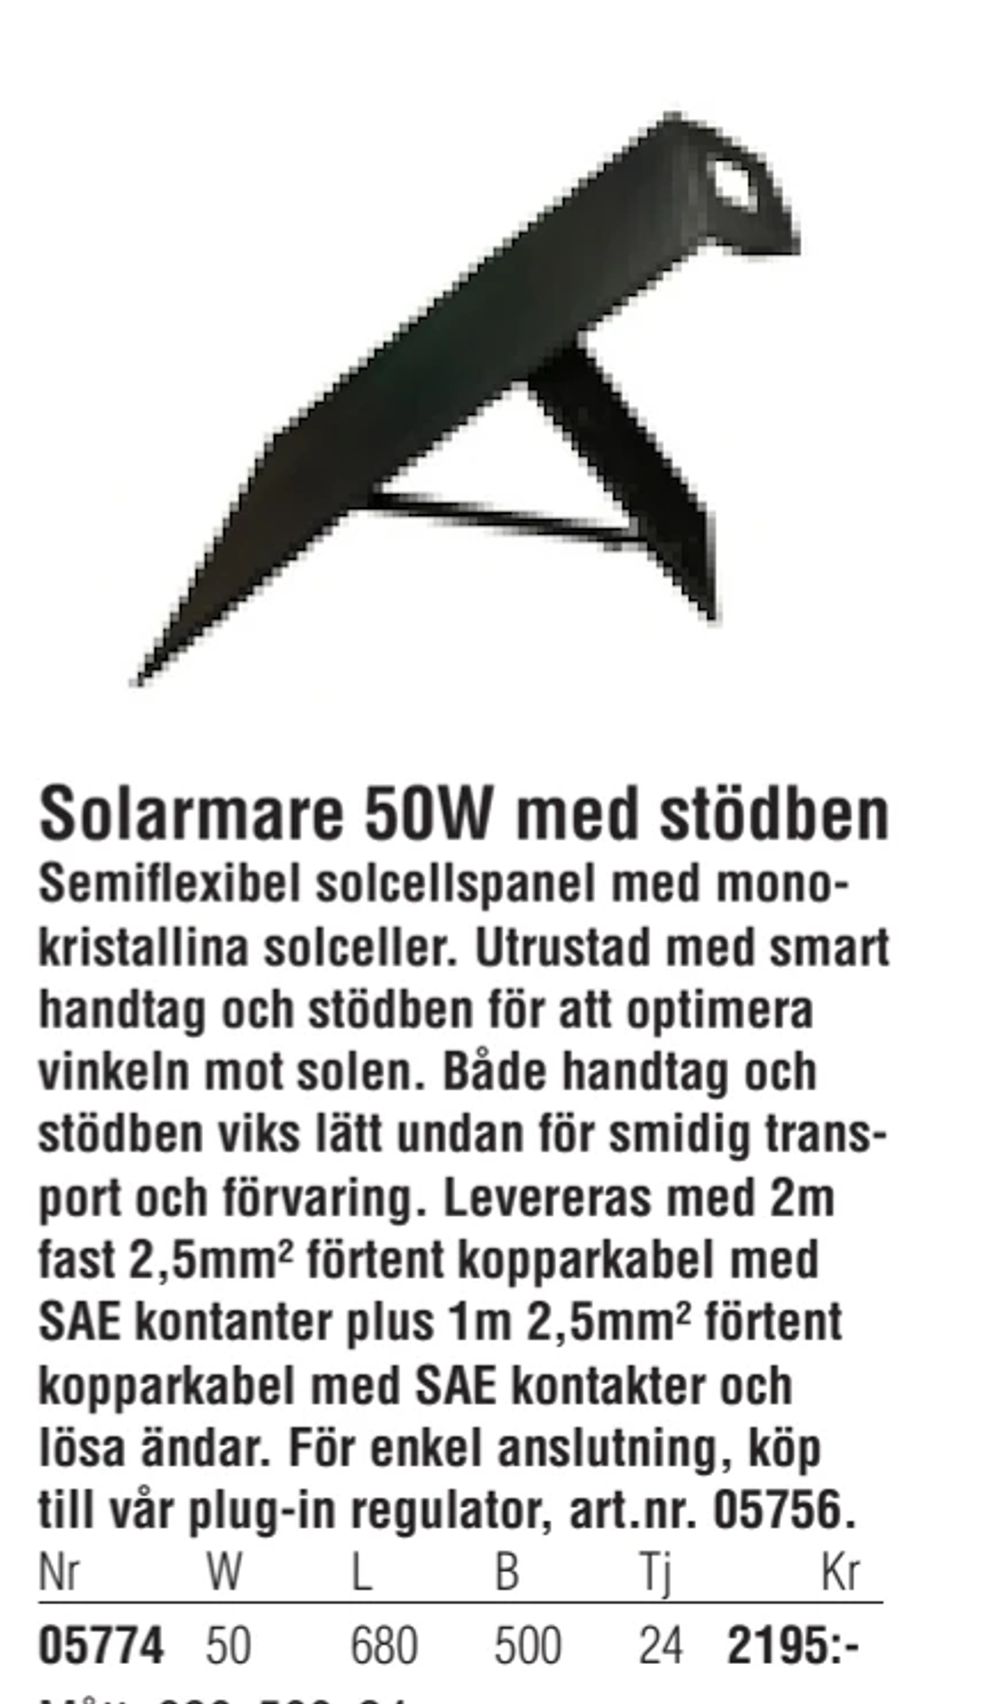 Erbjudanden på Solarmare 50W med stödben från Erlandsons Brygga för 2 195 kr